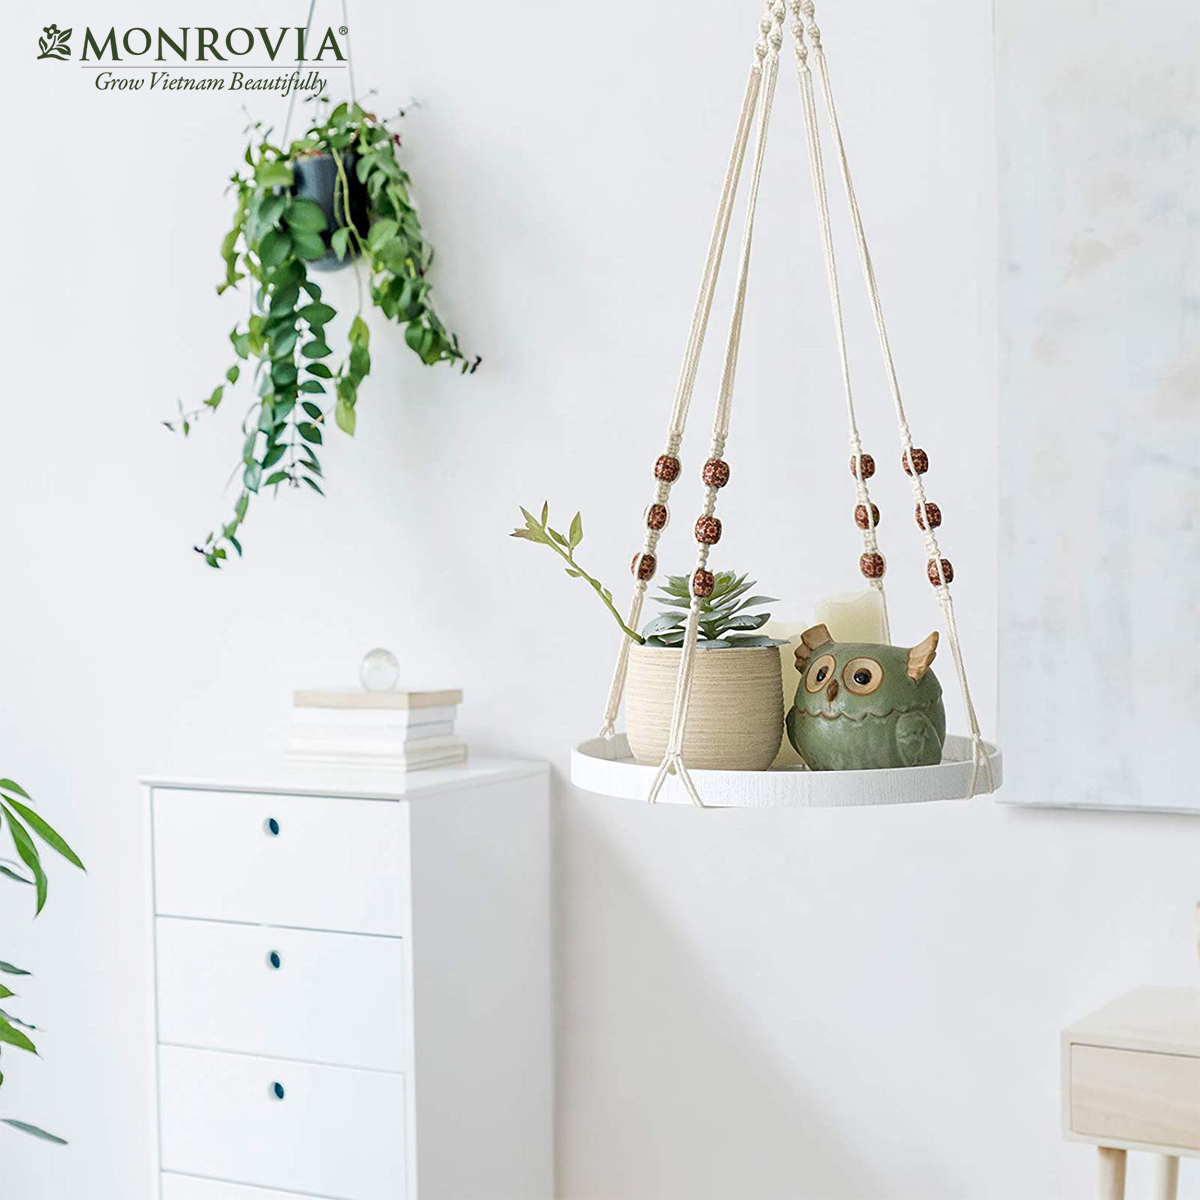 Set dây treo Macrame kèm đĩa đựng chậu MONROVIA, trang trí trong nhà, sân vườn, đan thủ công tỉ mỉ, Tiêu chuẩn Châu Âu